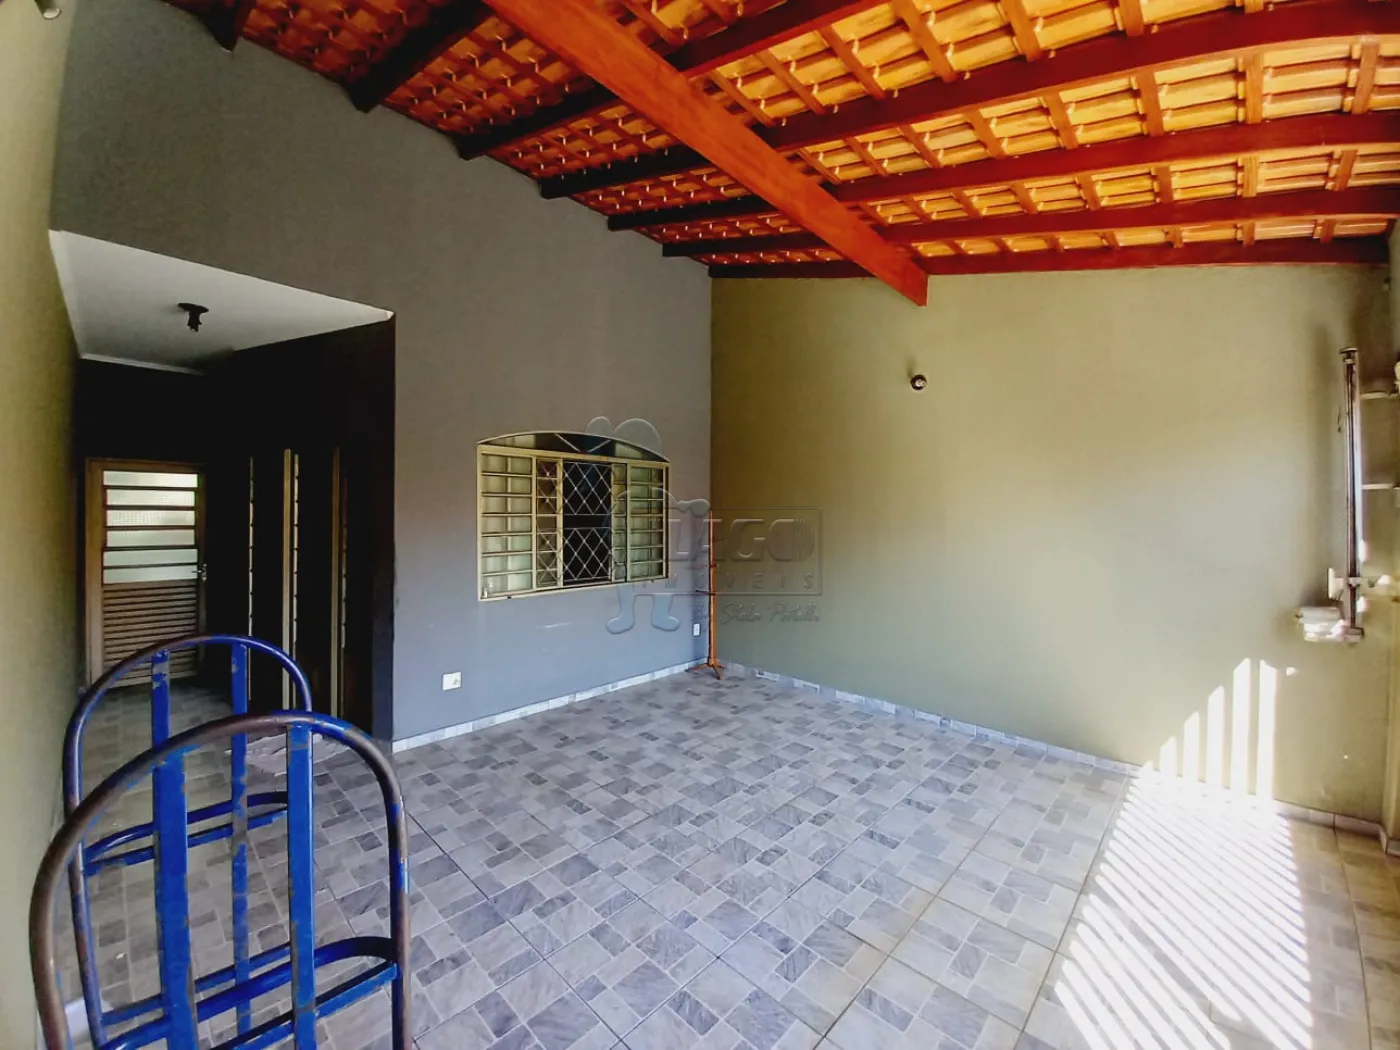 Alugar Casas / Padrão em Ribeirão Preto R$ 2.200,00 - Foto 3